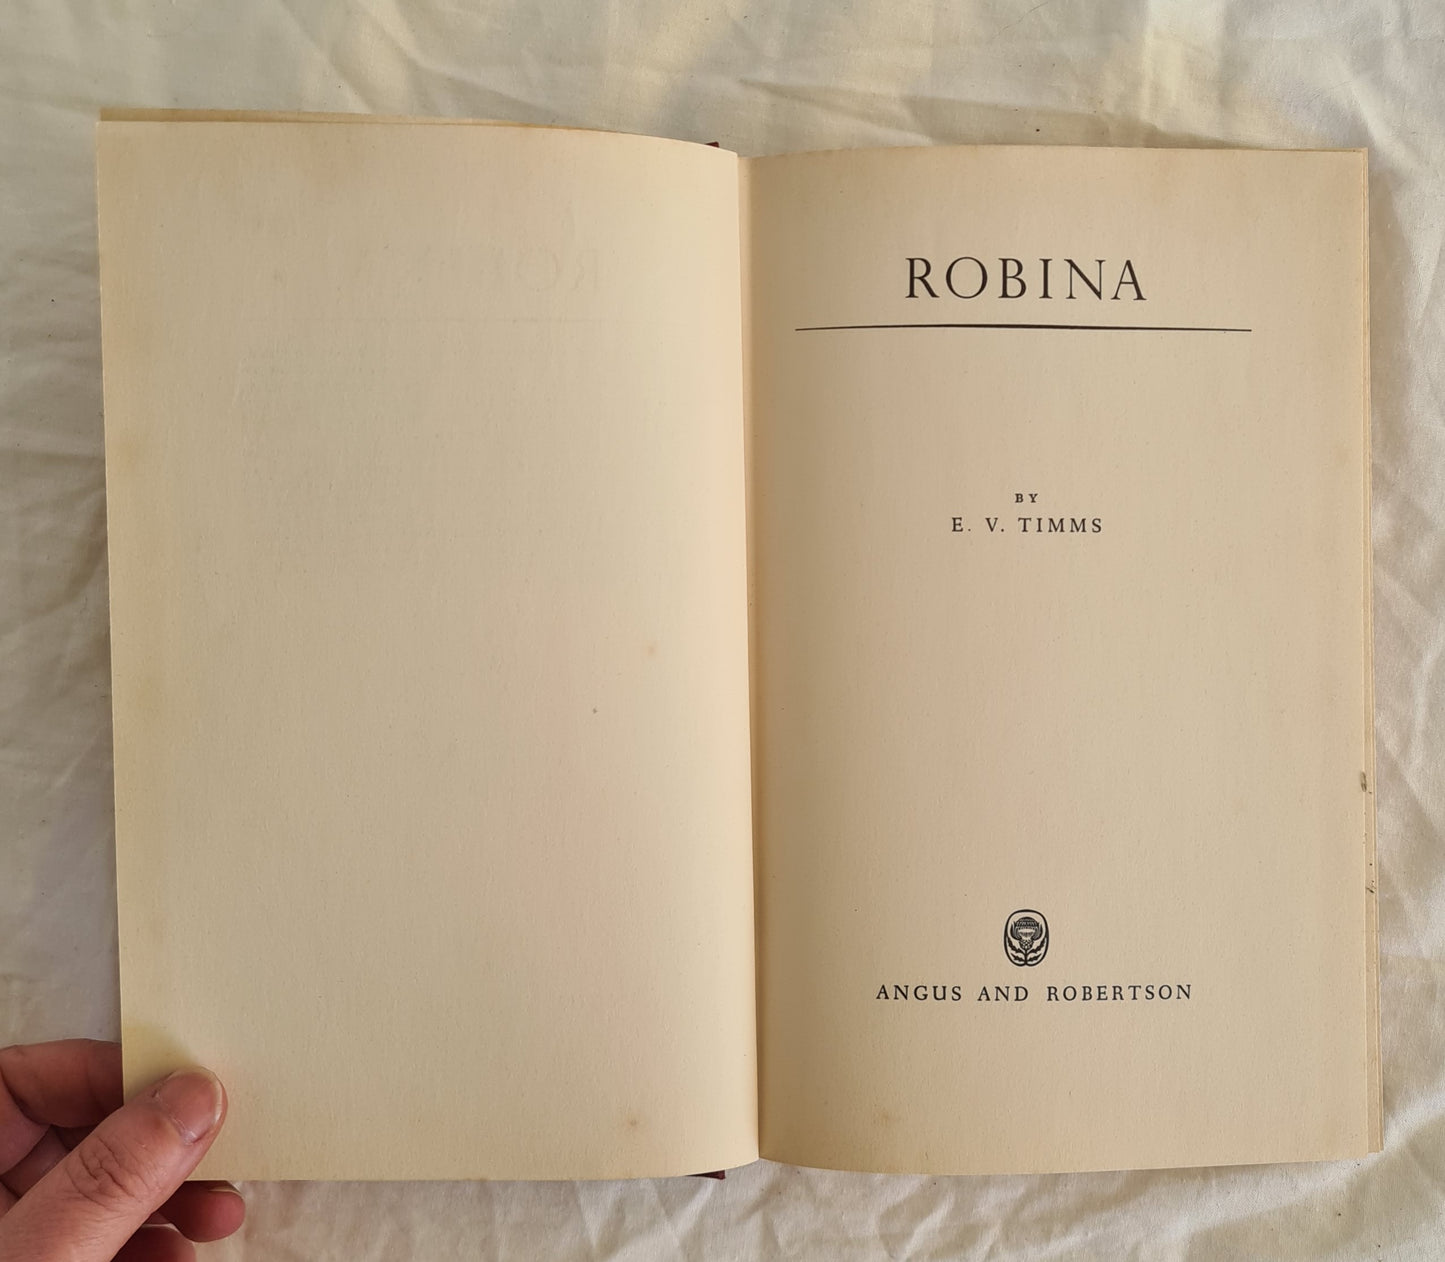 Robina by E. V. Timms